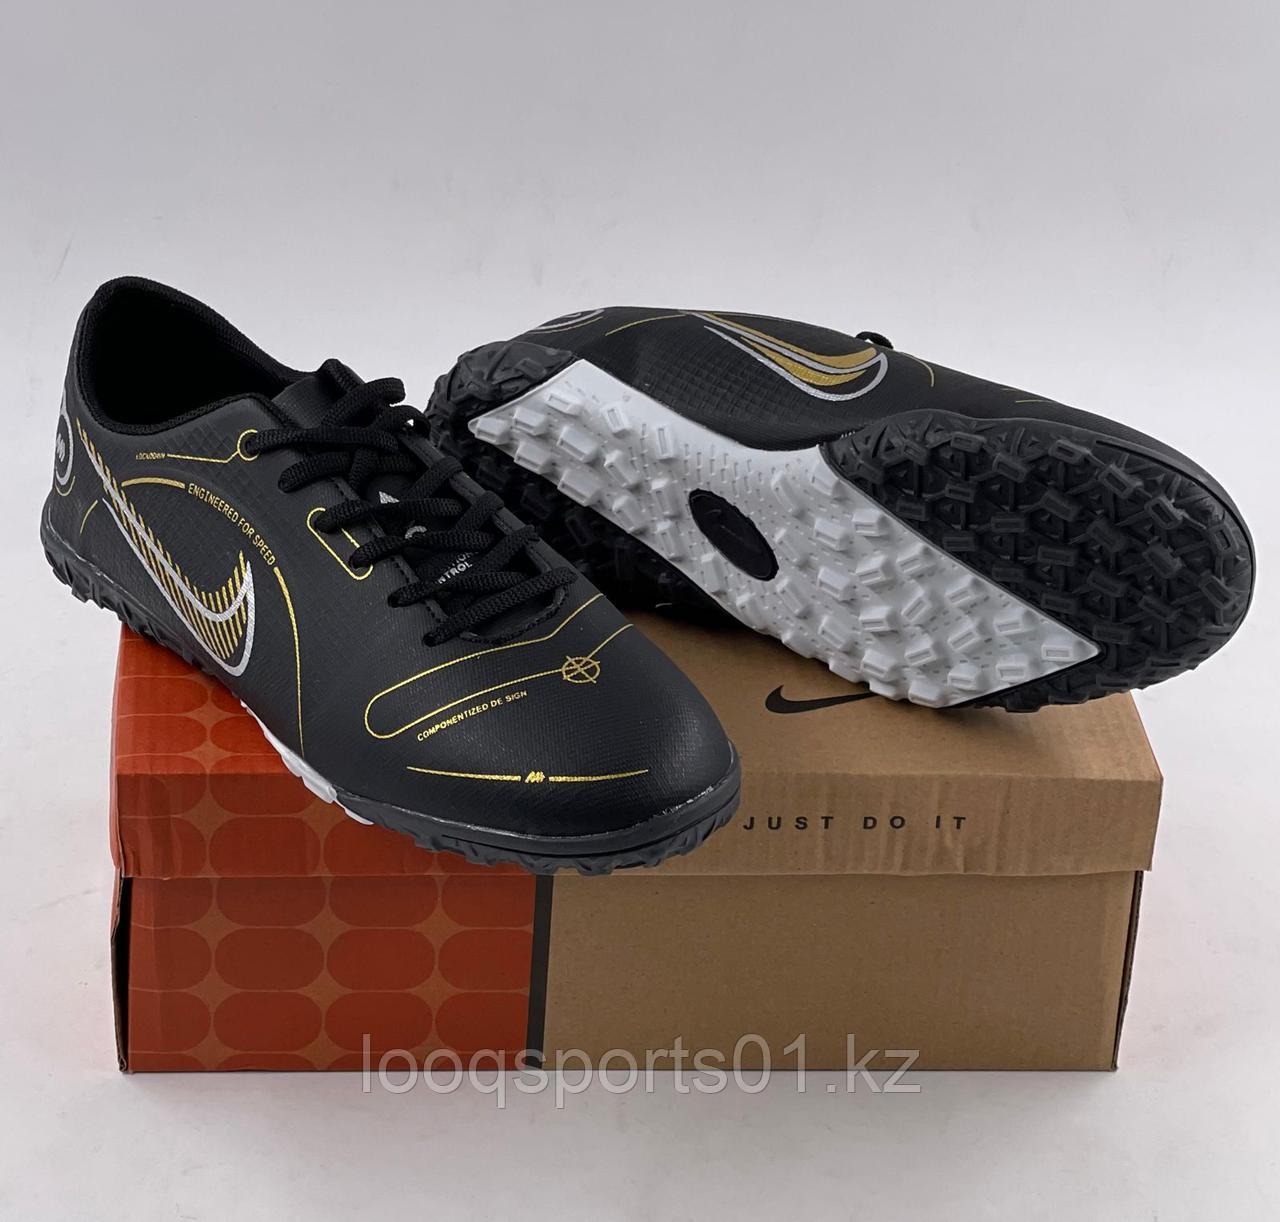 Футбольные бутсы сороконожки, миники (обувь для футбола) Nike